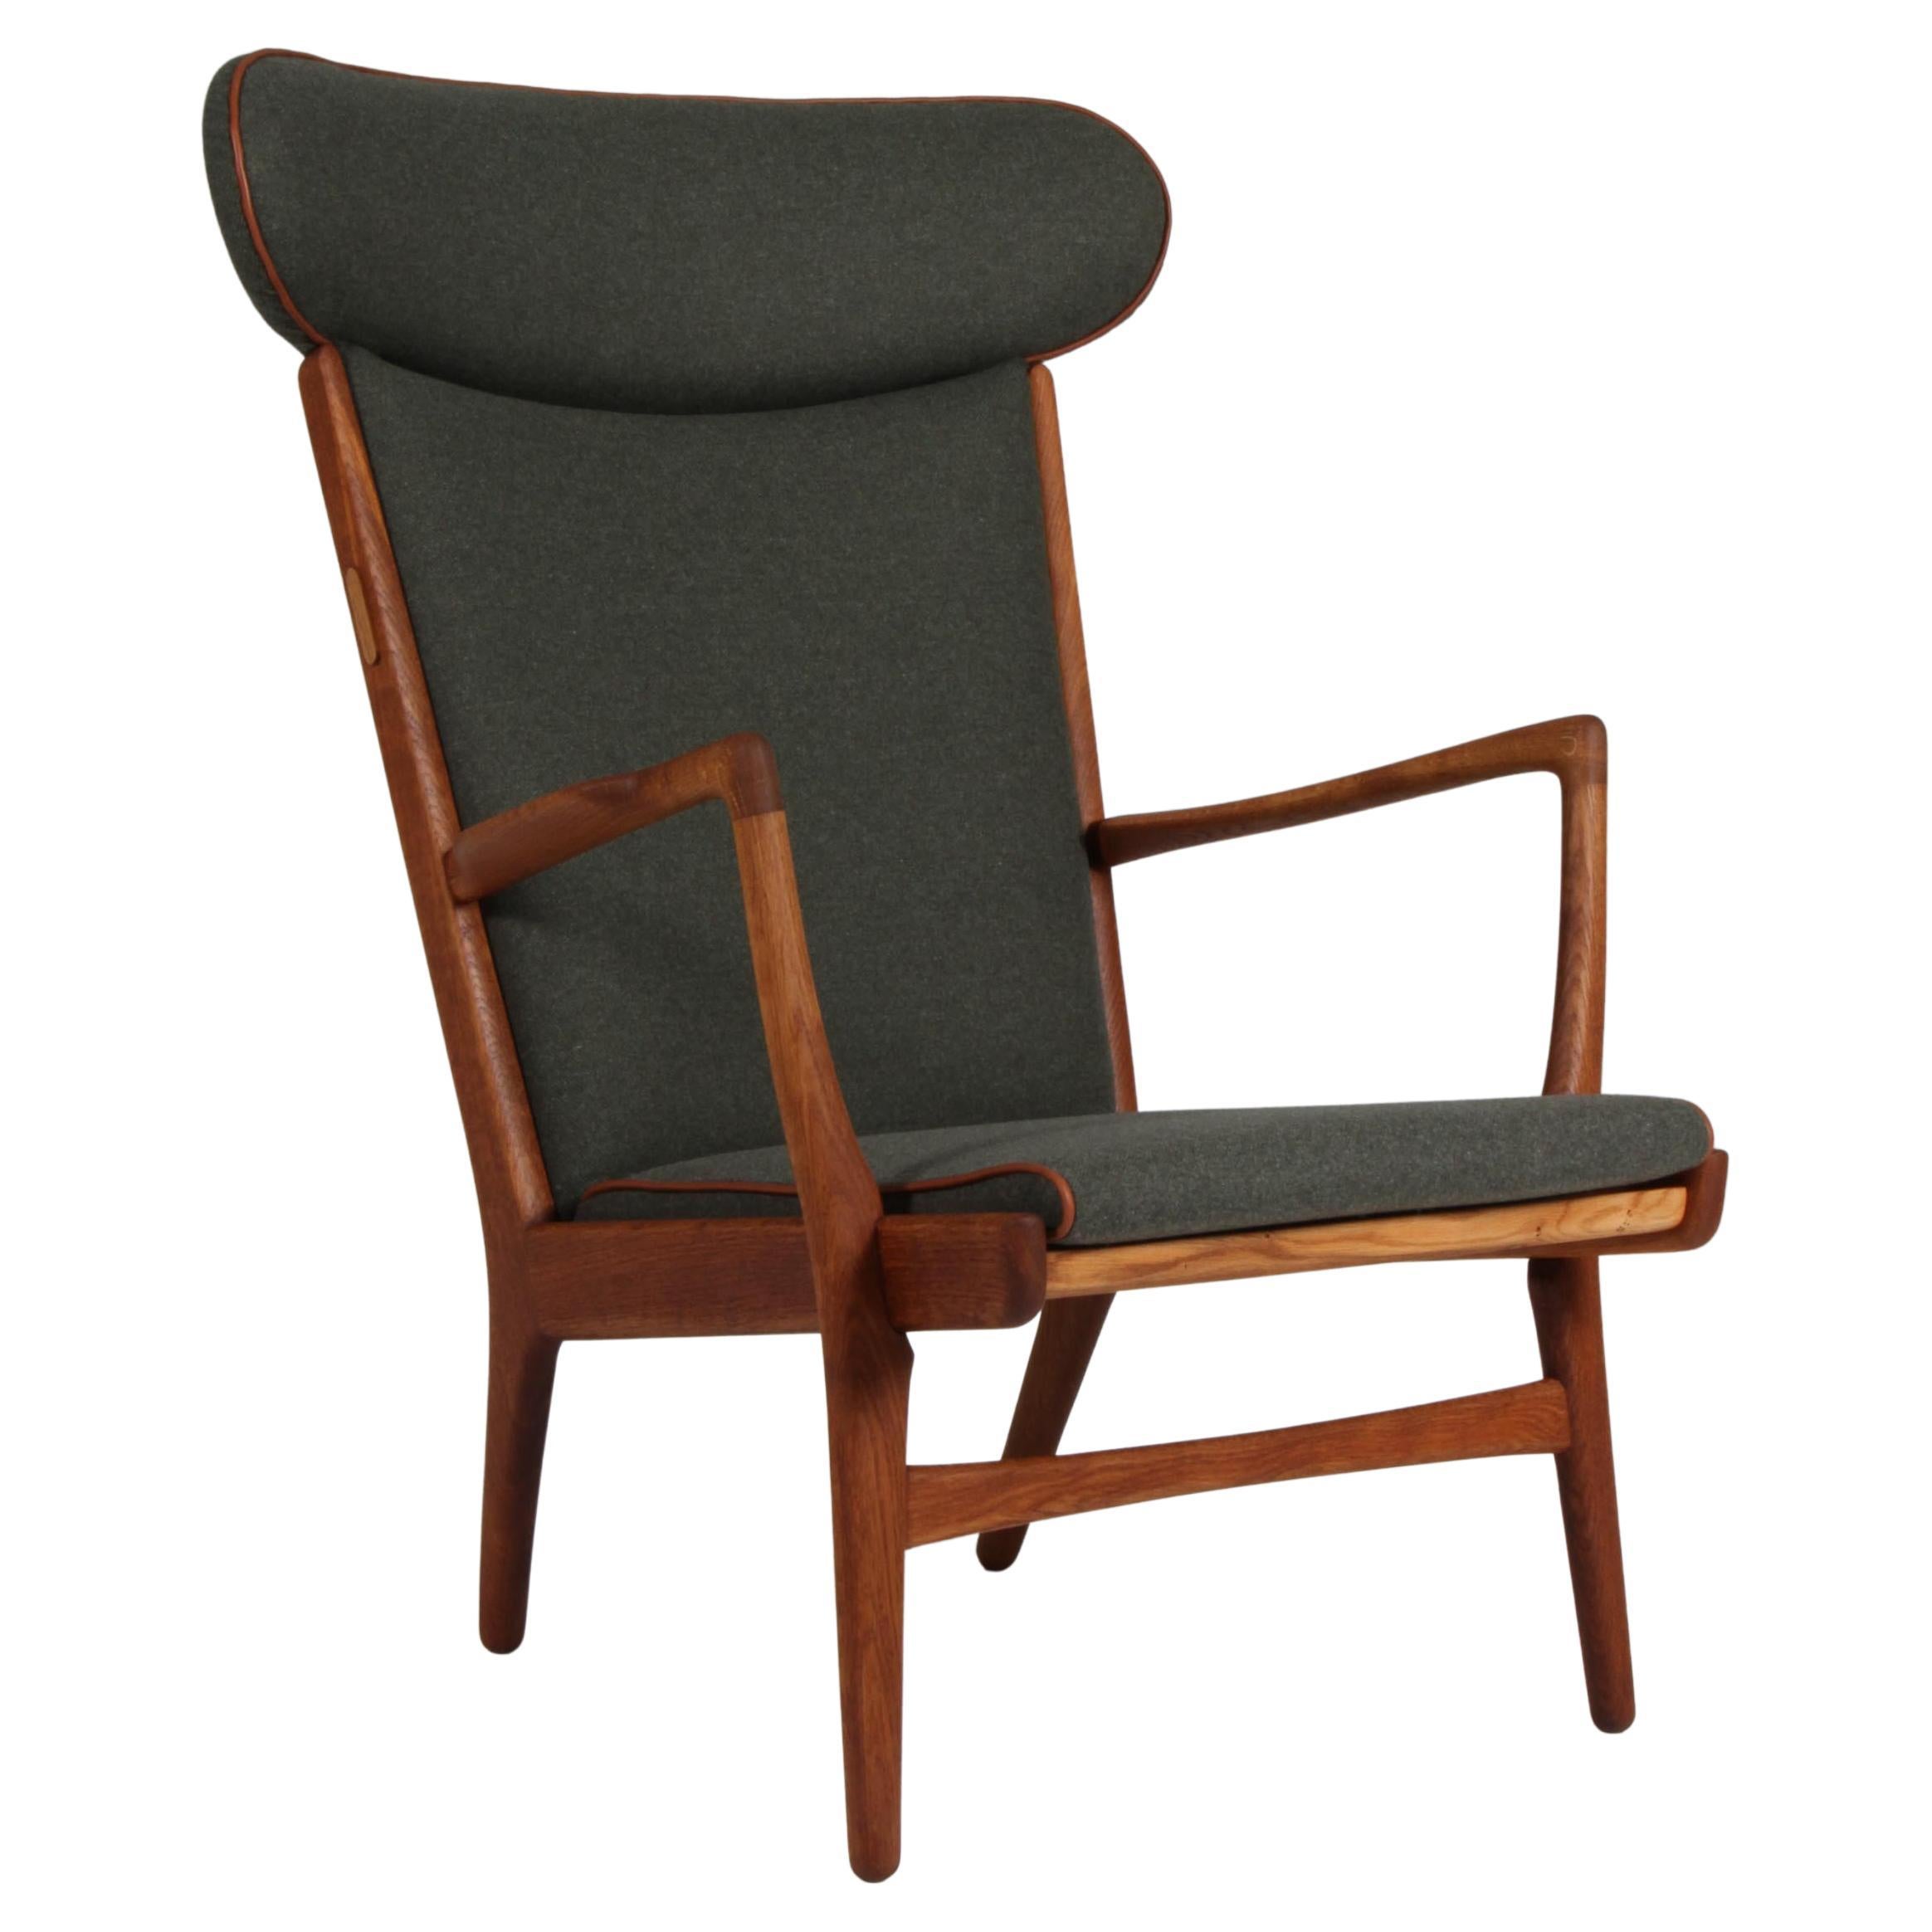 Lounge / armchair, Model AP15, by Hans Wegner for A.P. Stolen. Full grain For Sale